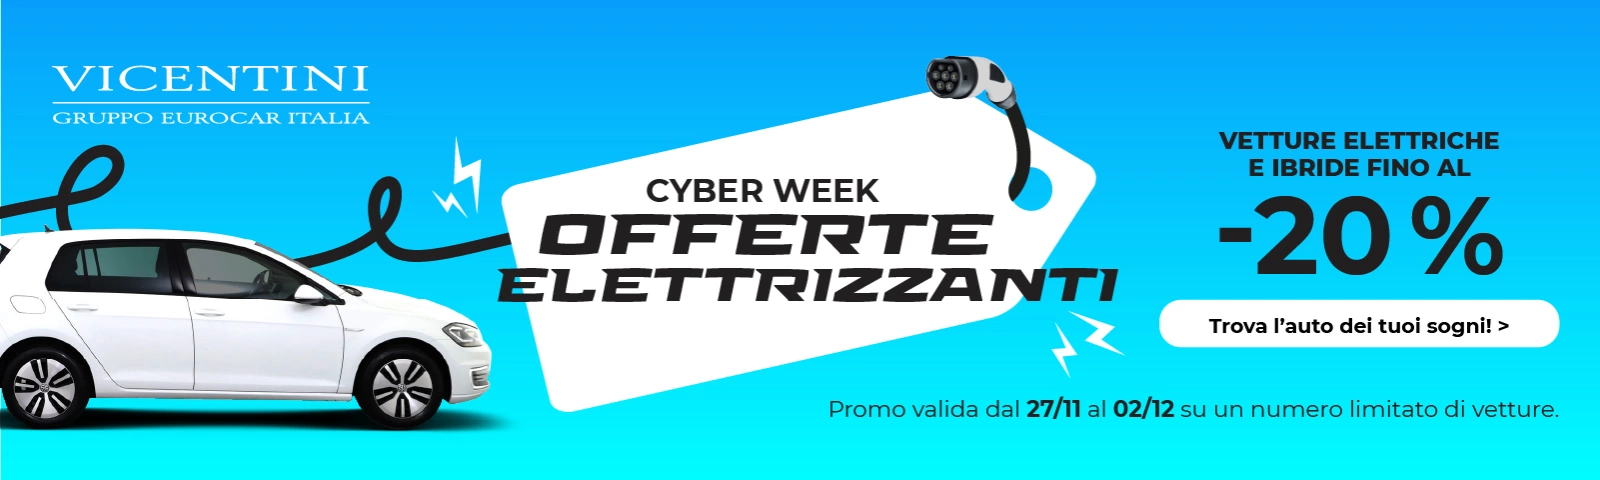 cyberweek_vicentini